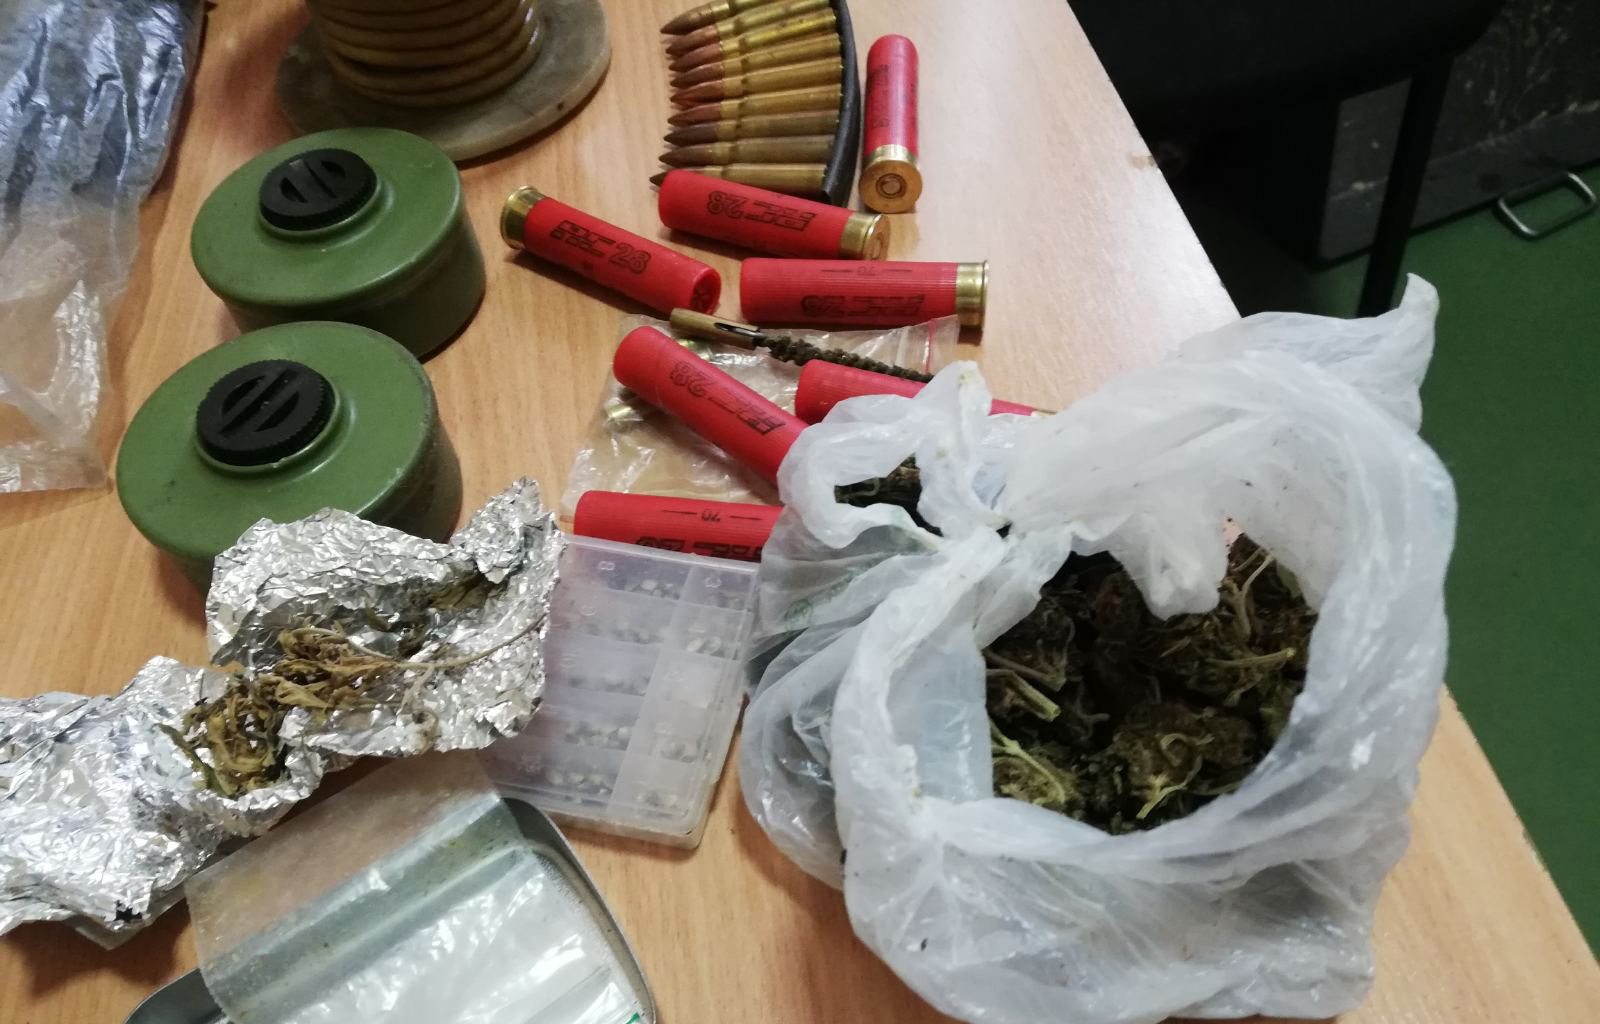  Полиција у кући осумњиченог пронашла марихуану, противпешадијске мине, муницију 